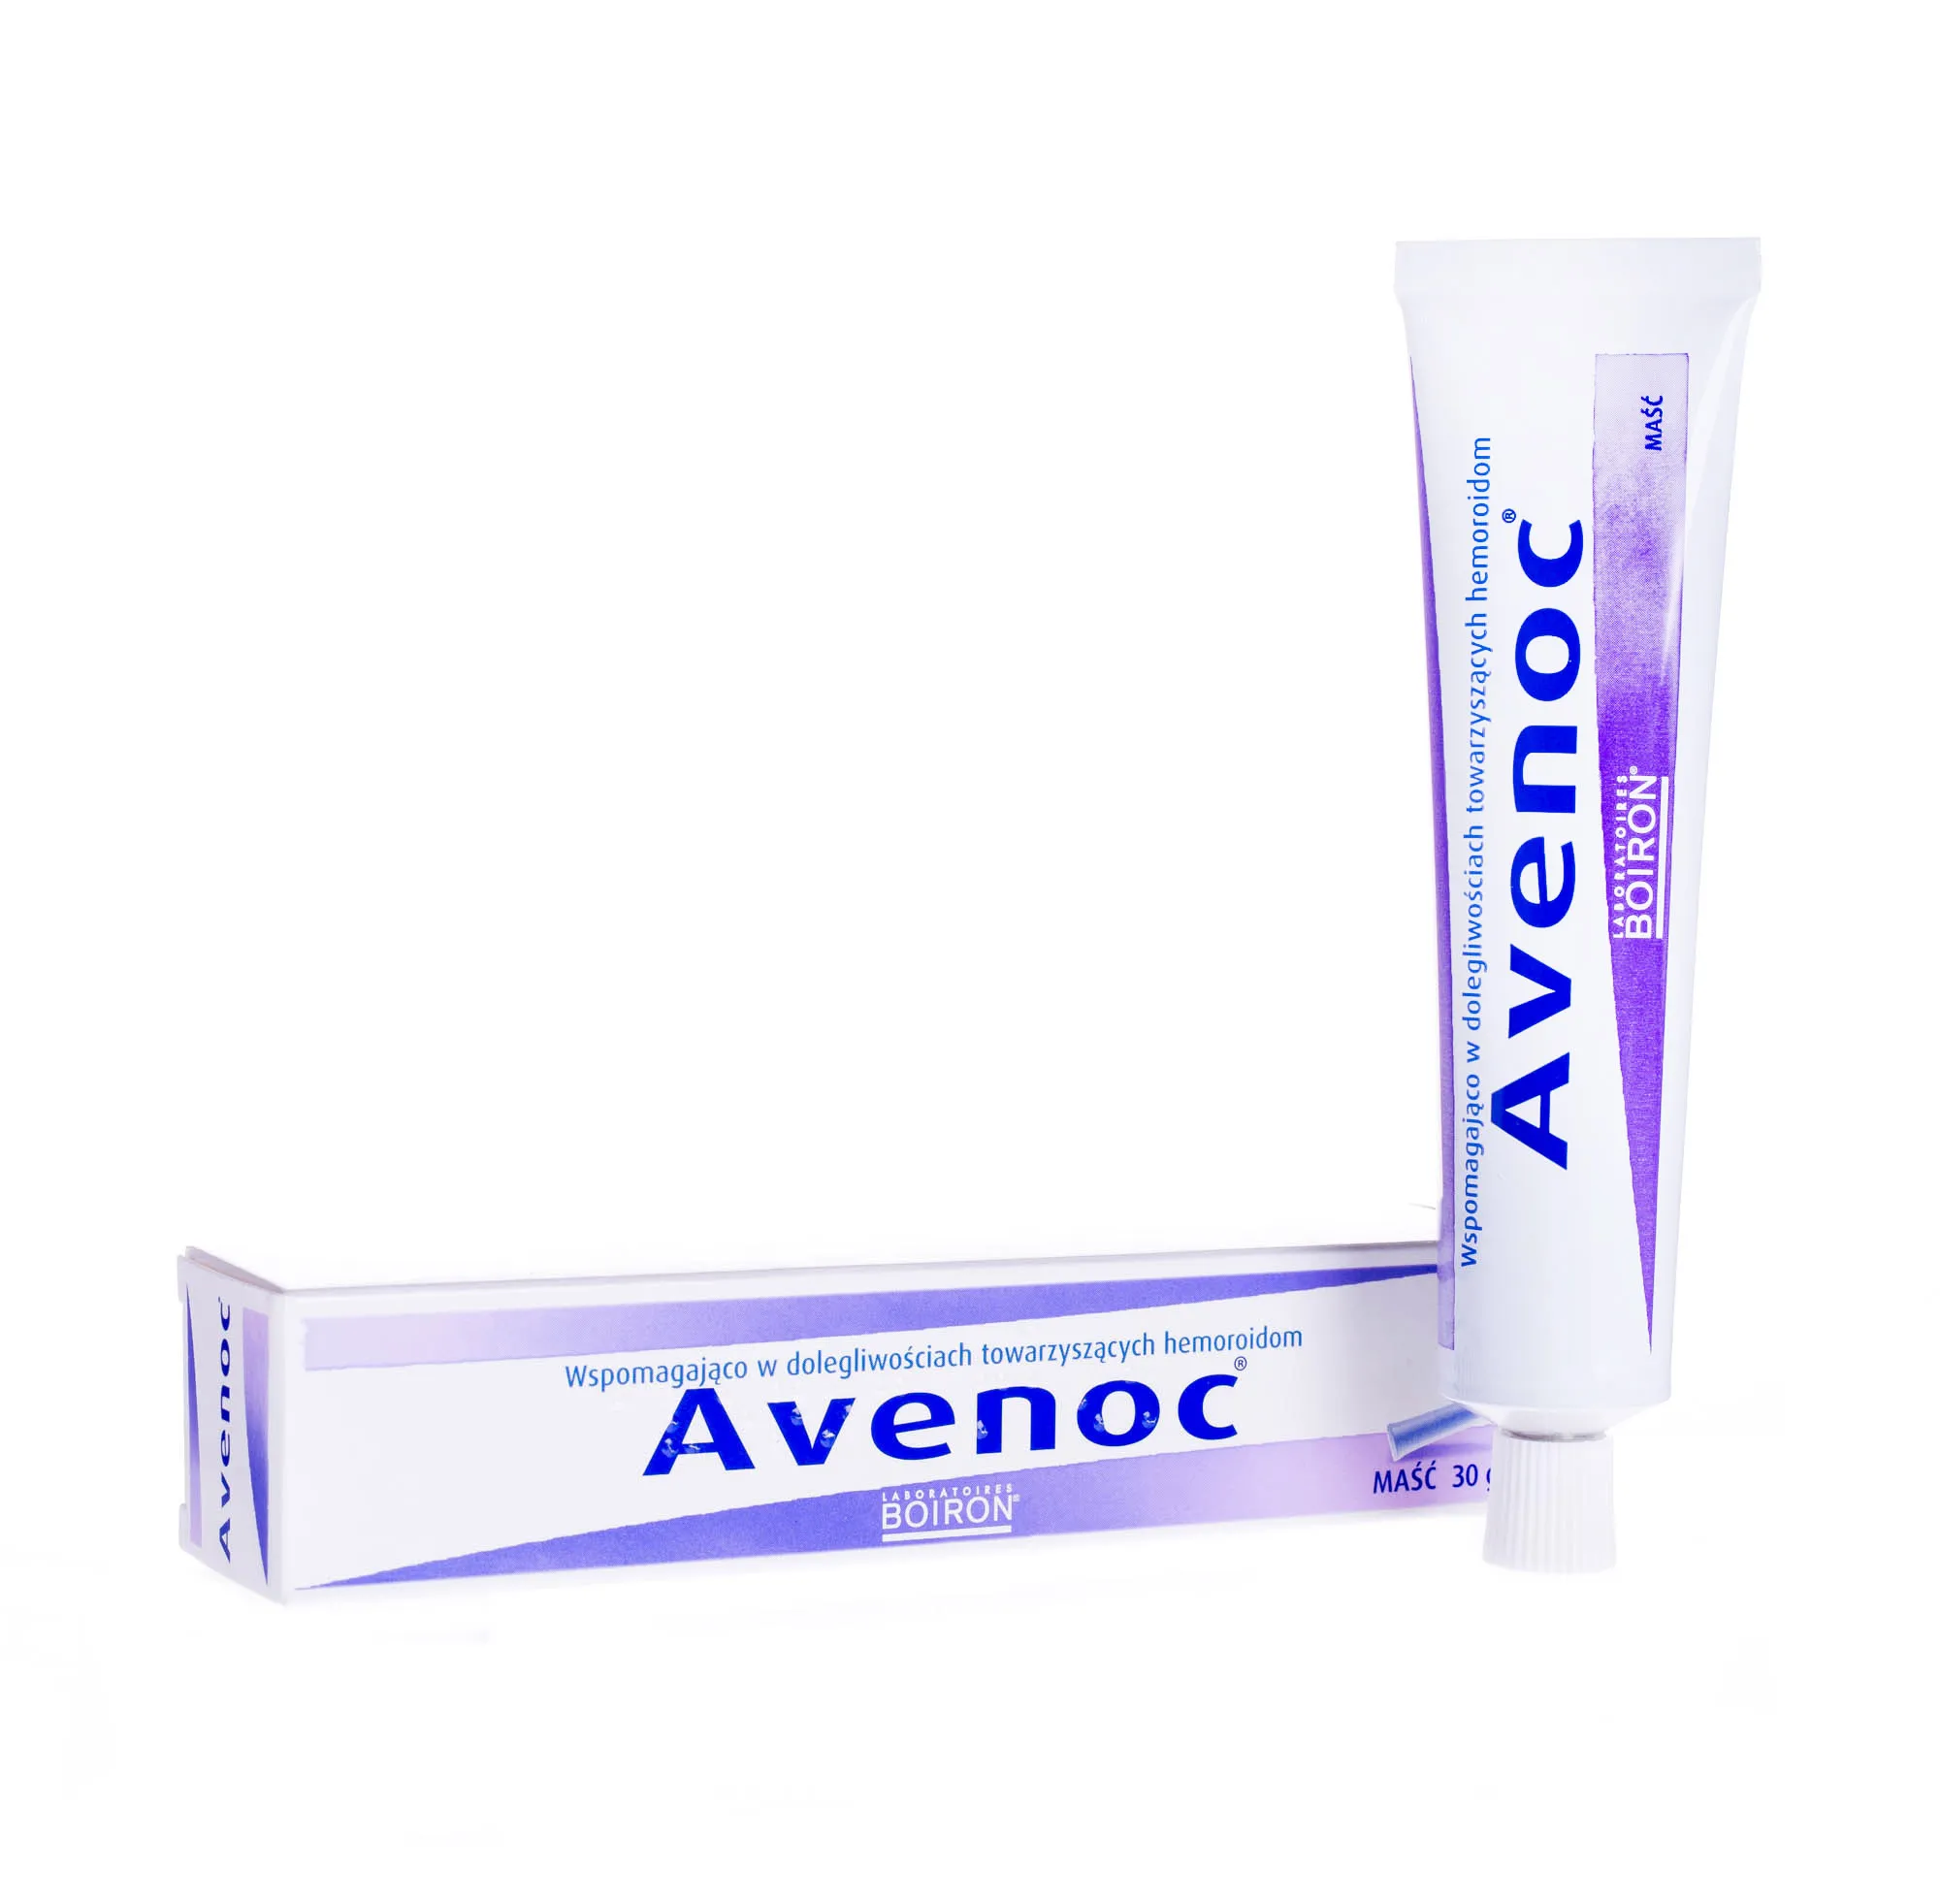 Avenoc - maść wspomagająco w dolegliwościach towarzyszących hemoroidom, 30 g